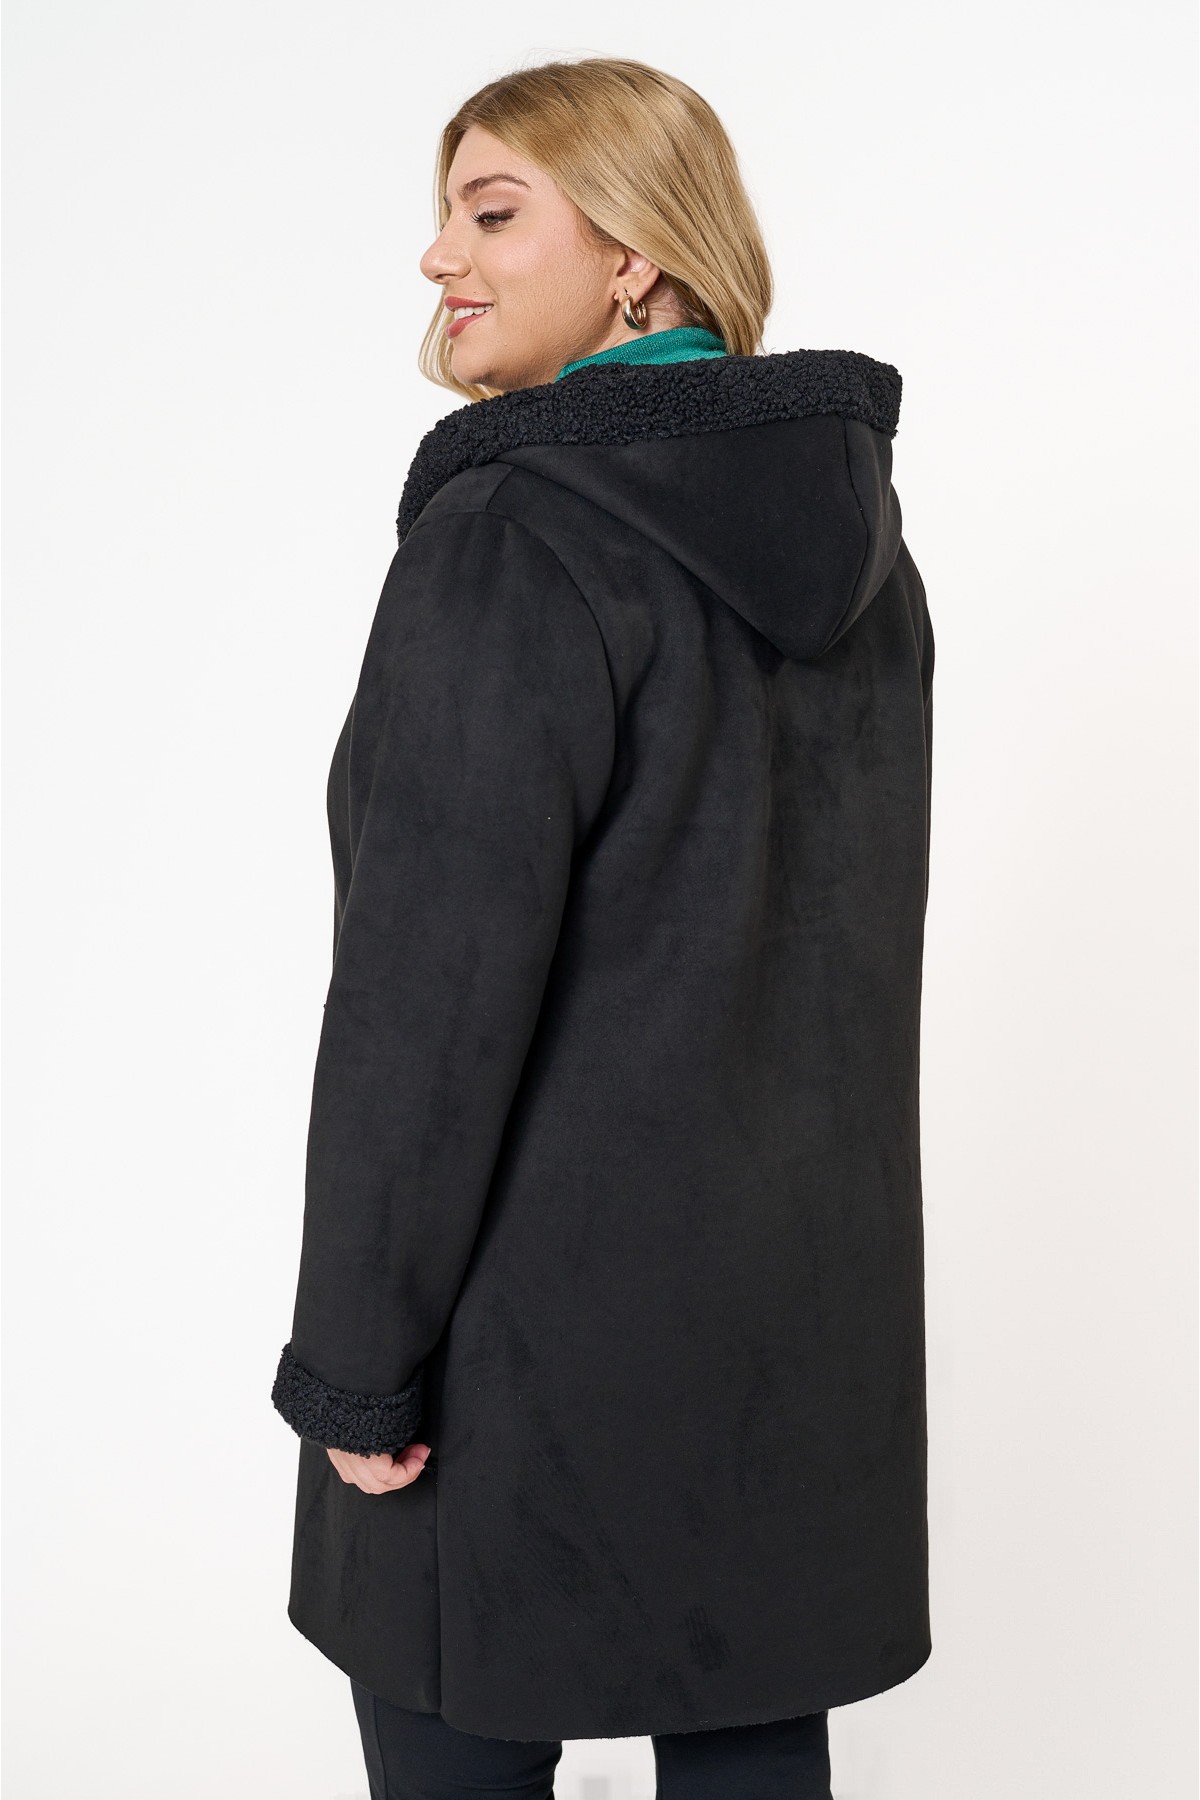 Παλτό με τρία κουμπιά σουέτ μαύρο